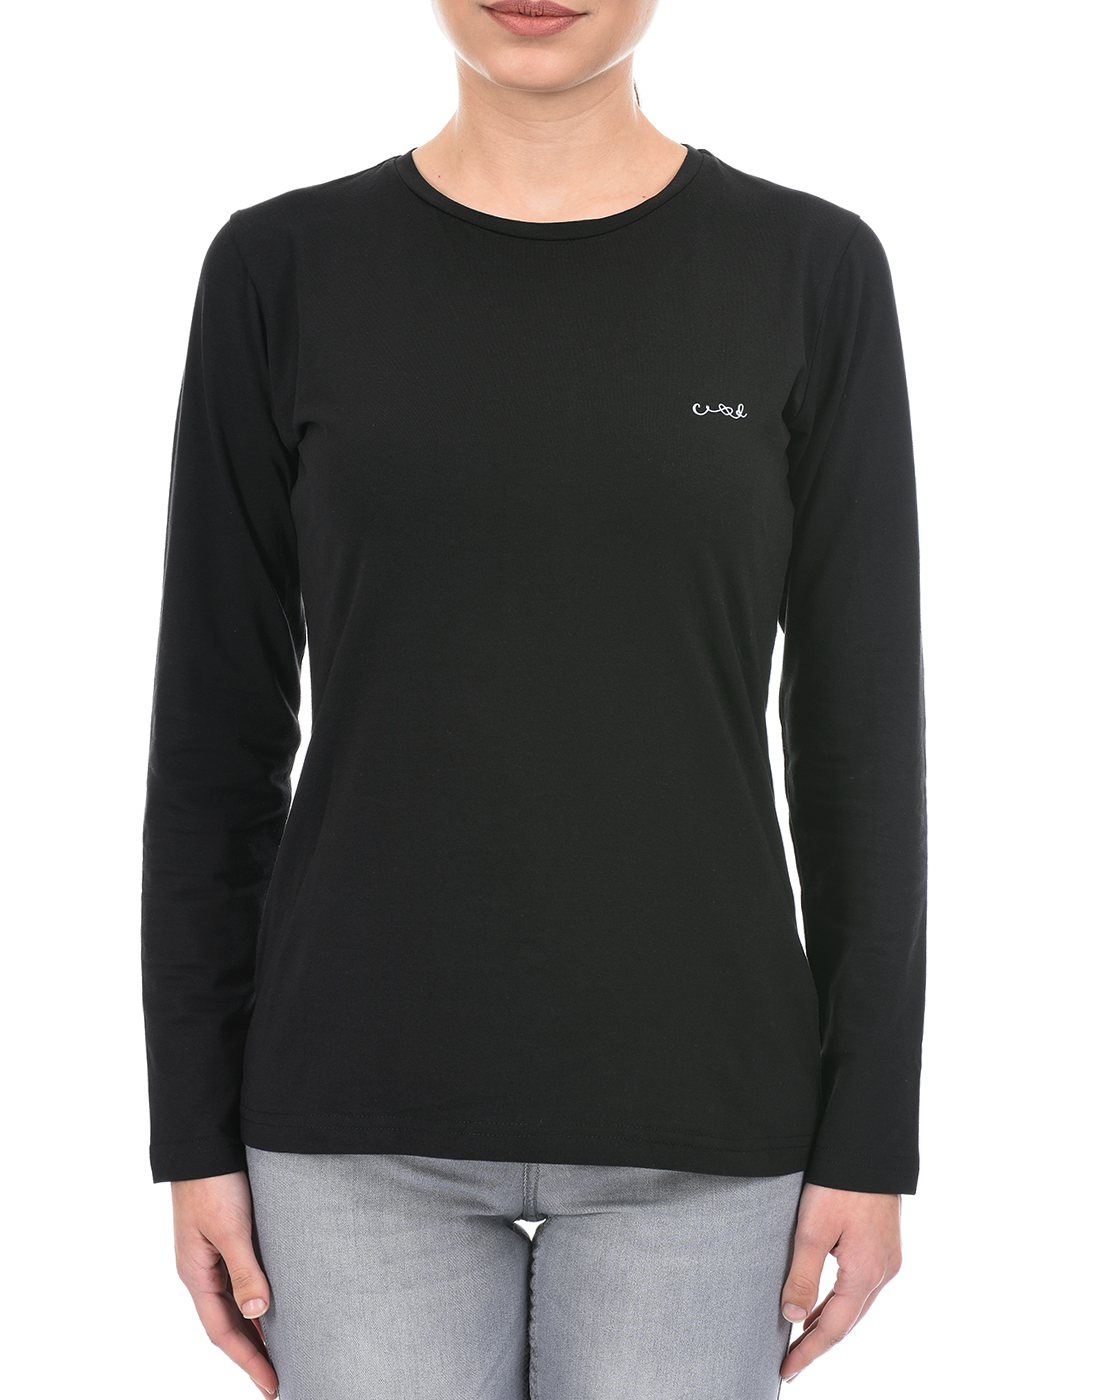 Cloak & Decker by Monte Carlo Women Solid Black T-Shirt